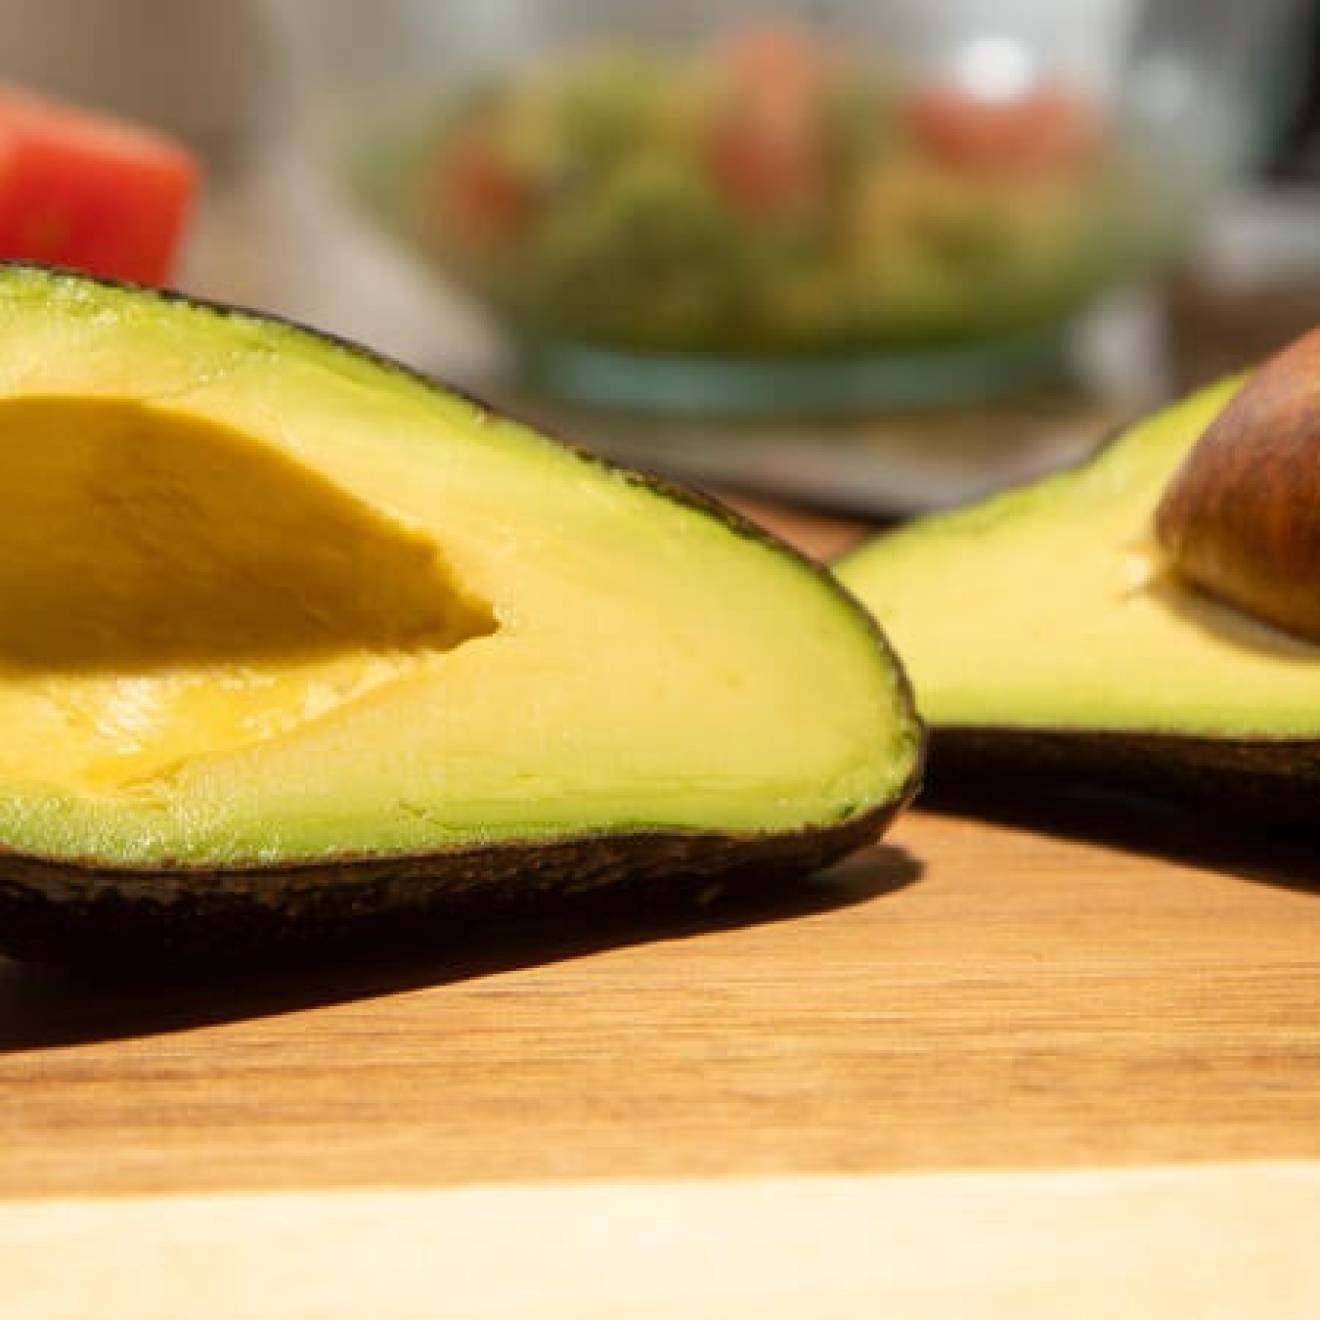 A split open avocado